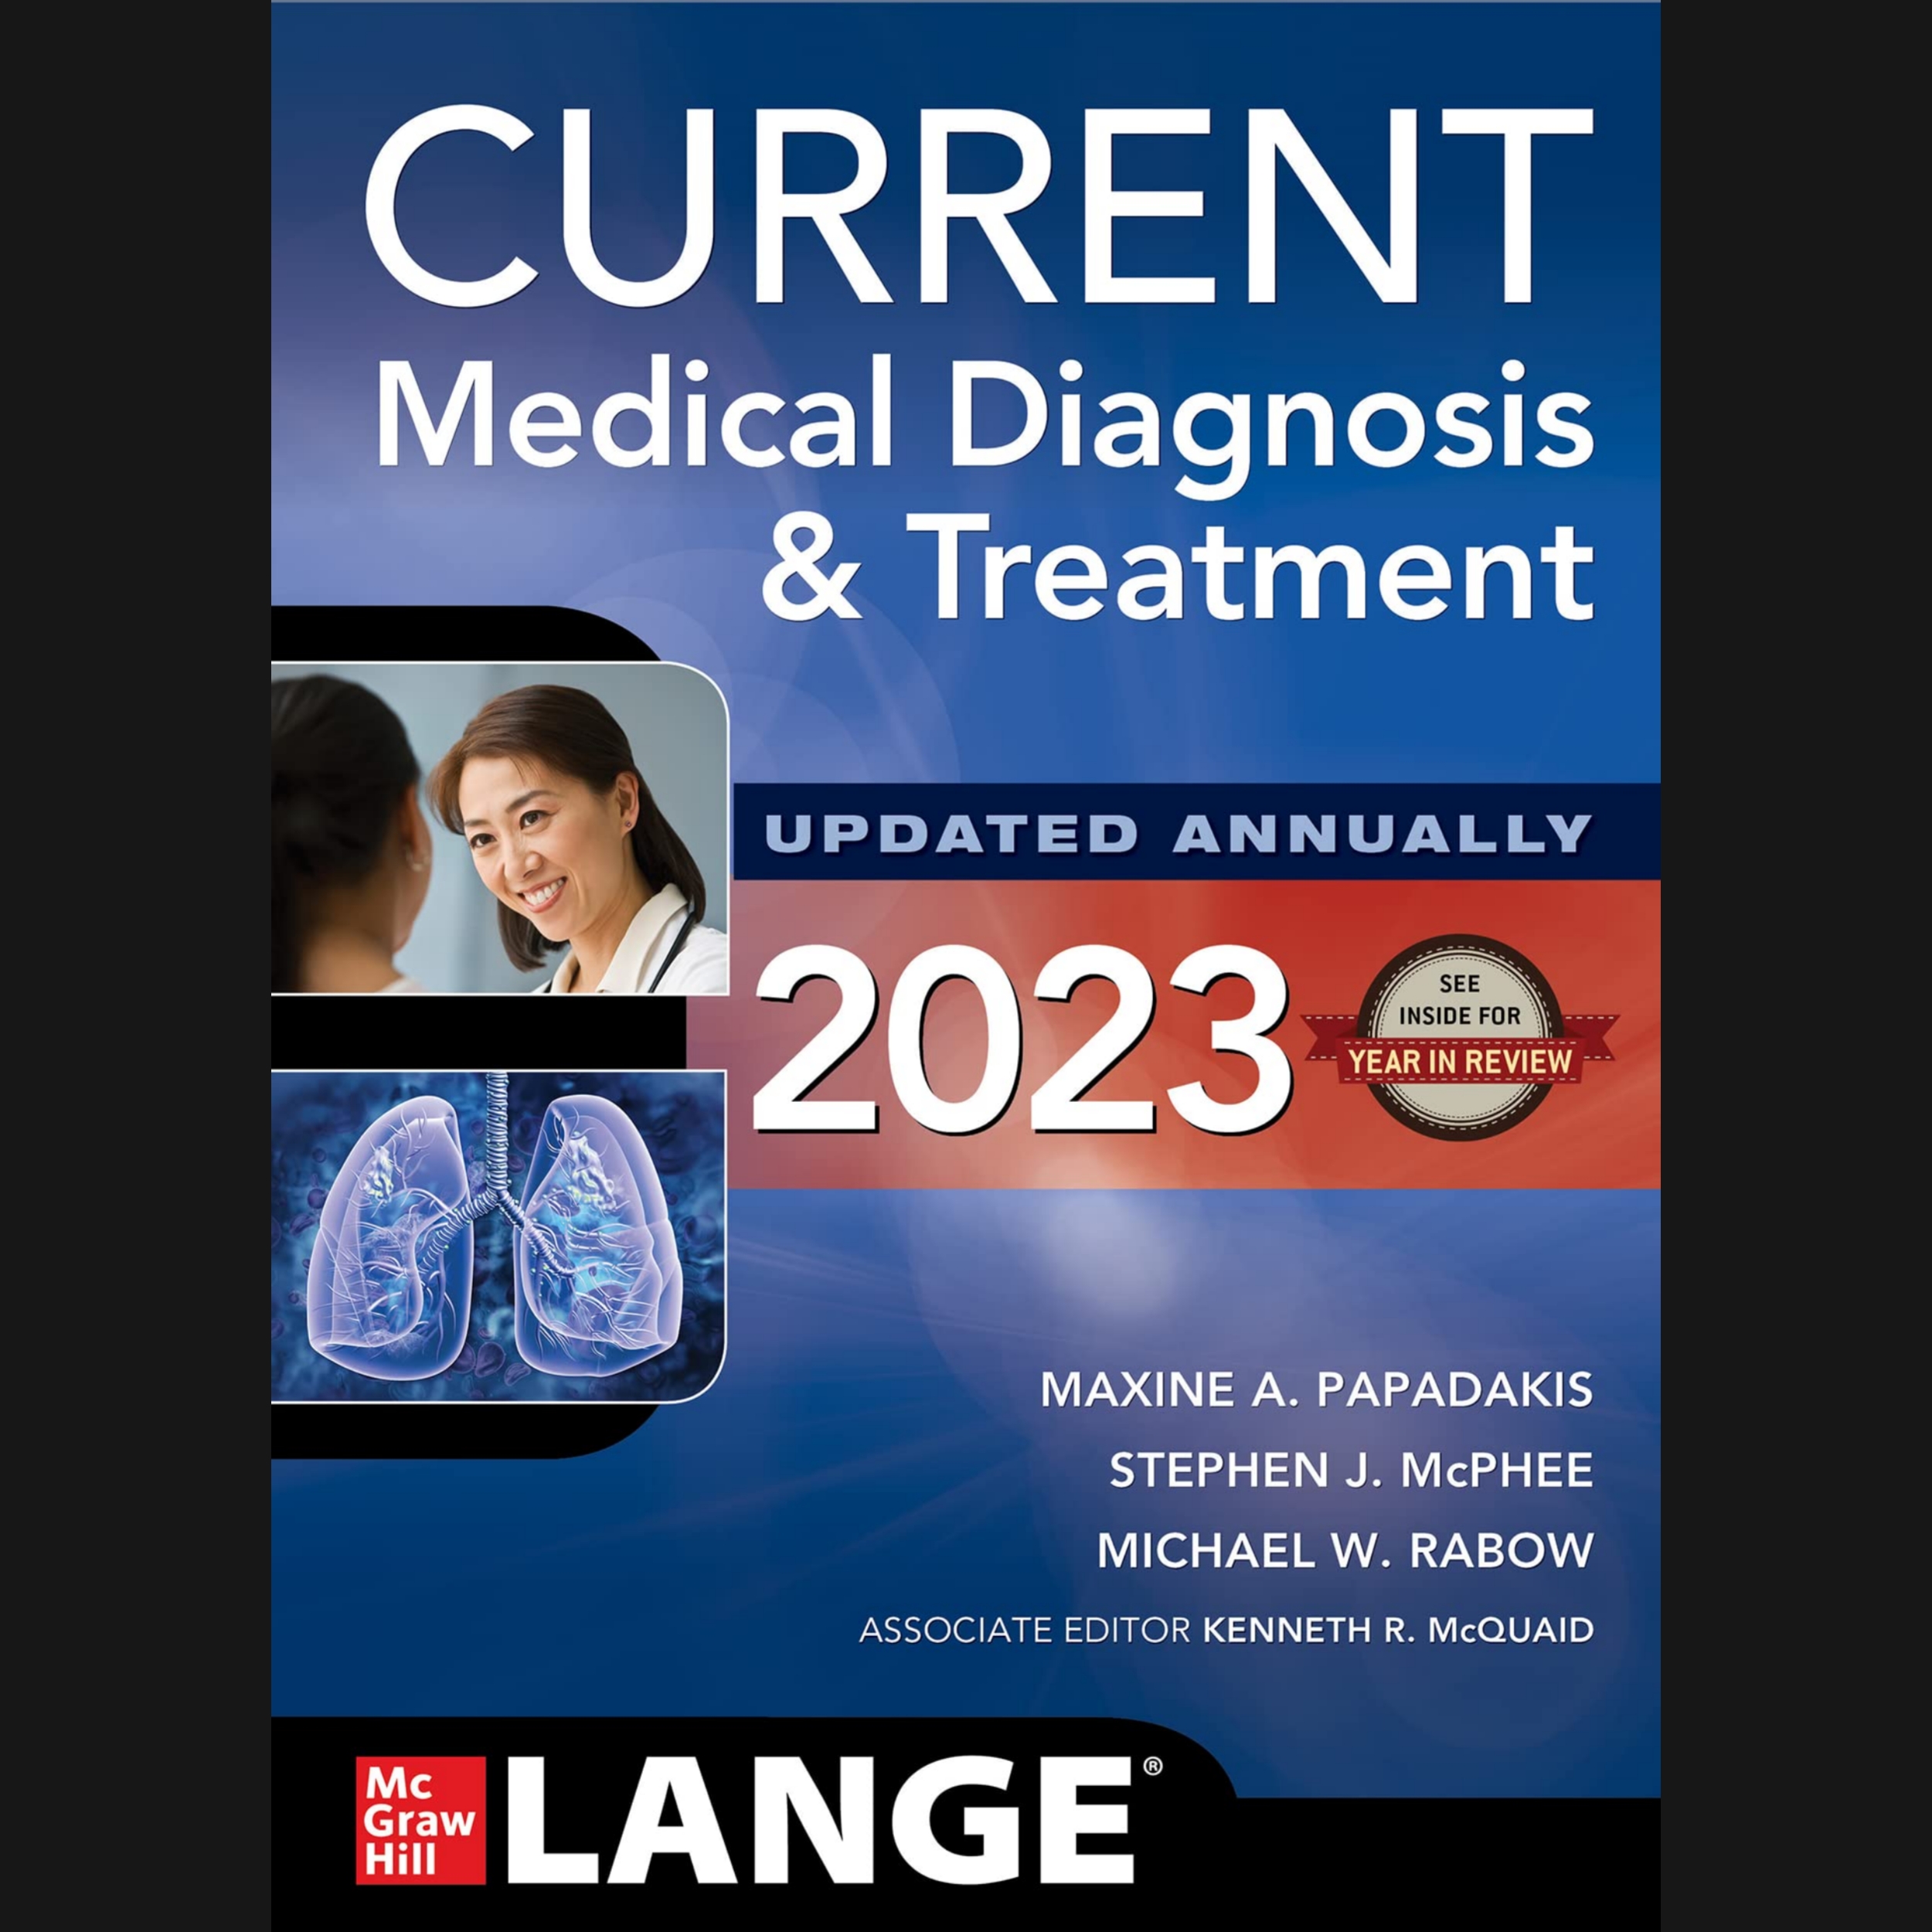 کتاب CURRENT Medical Diagnosis and Treatment اثر Maxine Papadakis انتشارات مک گرا هیل